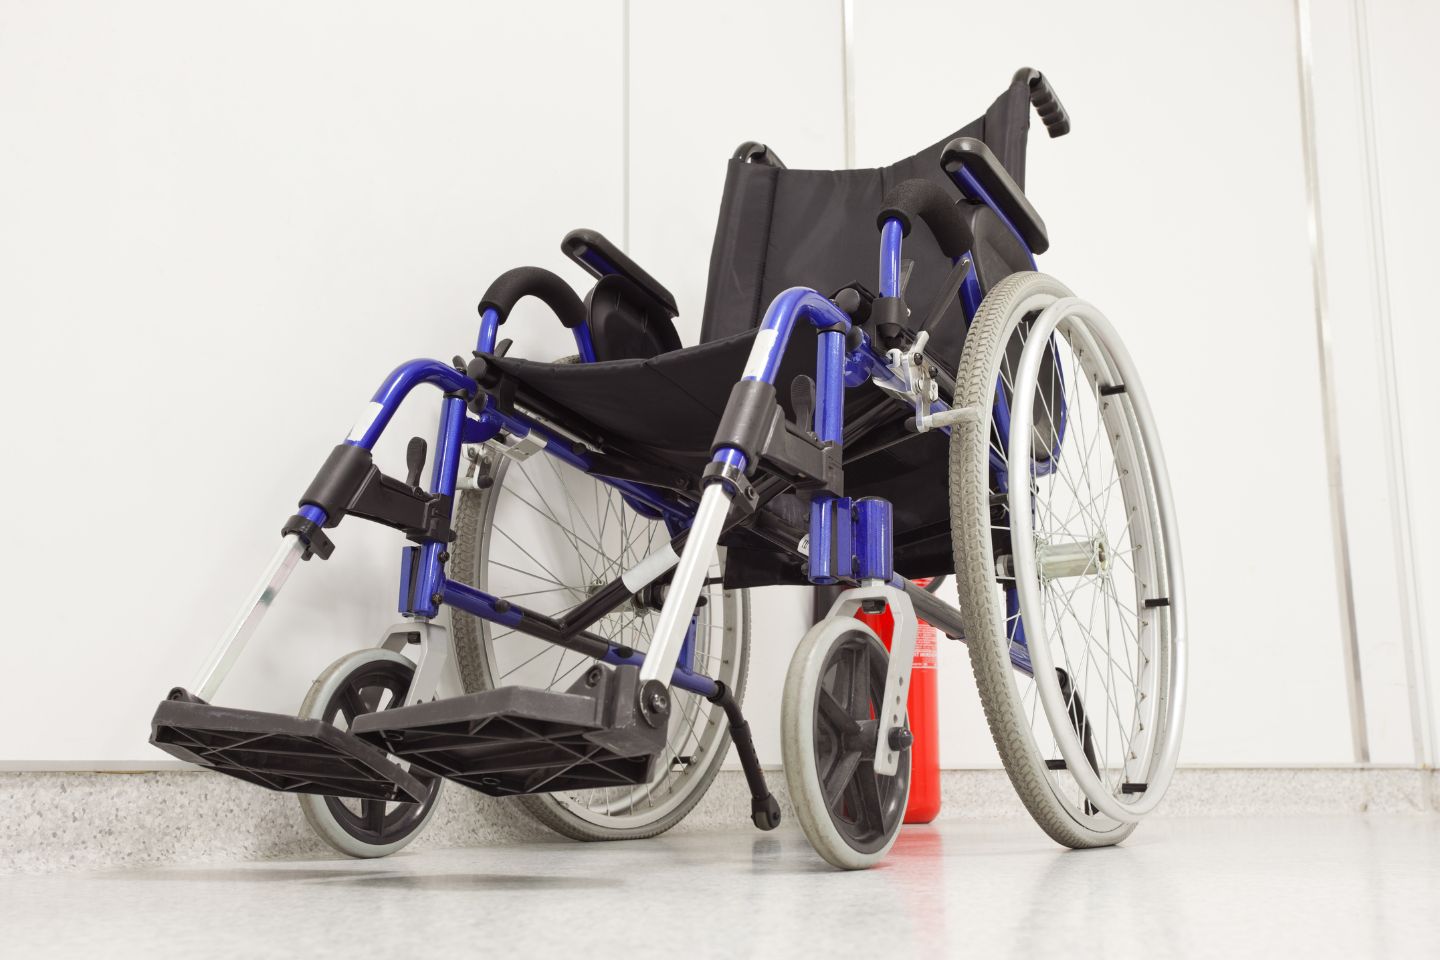 Comfort Wheelchair Cushion, Wheelchair Seat Cushion, Wheelchair Pillow,  Recliner or Chair Cushion